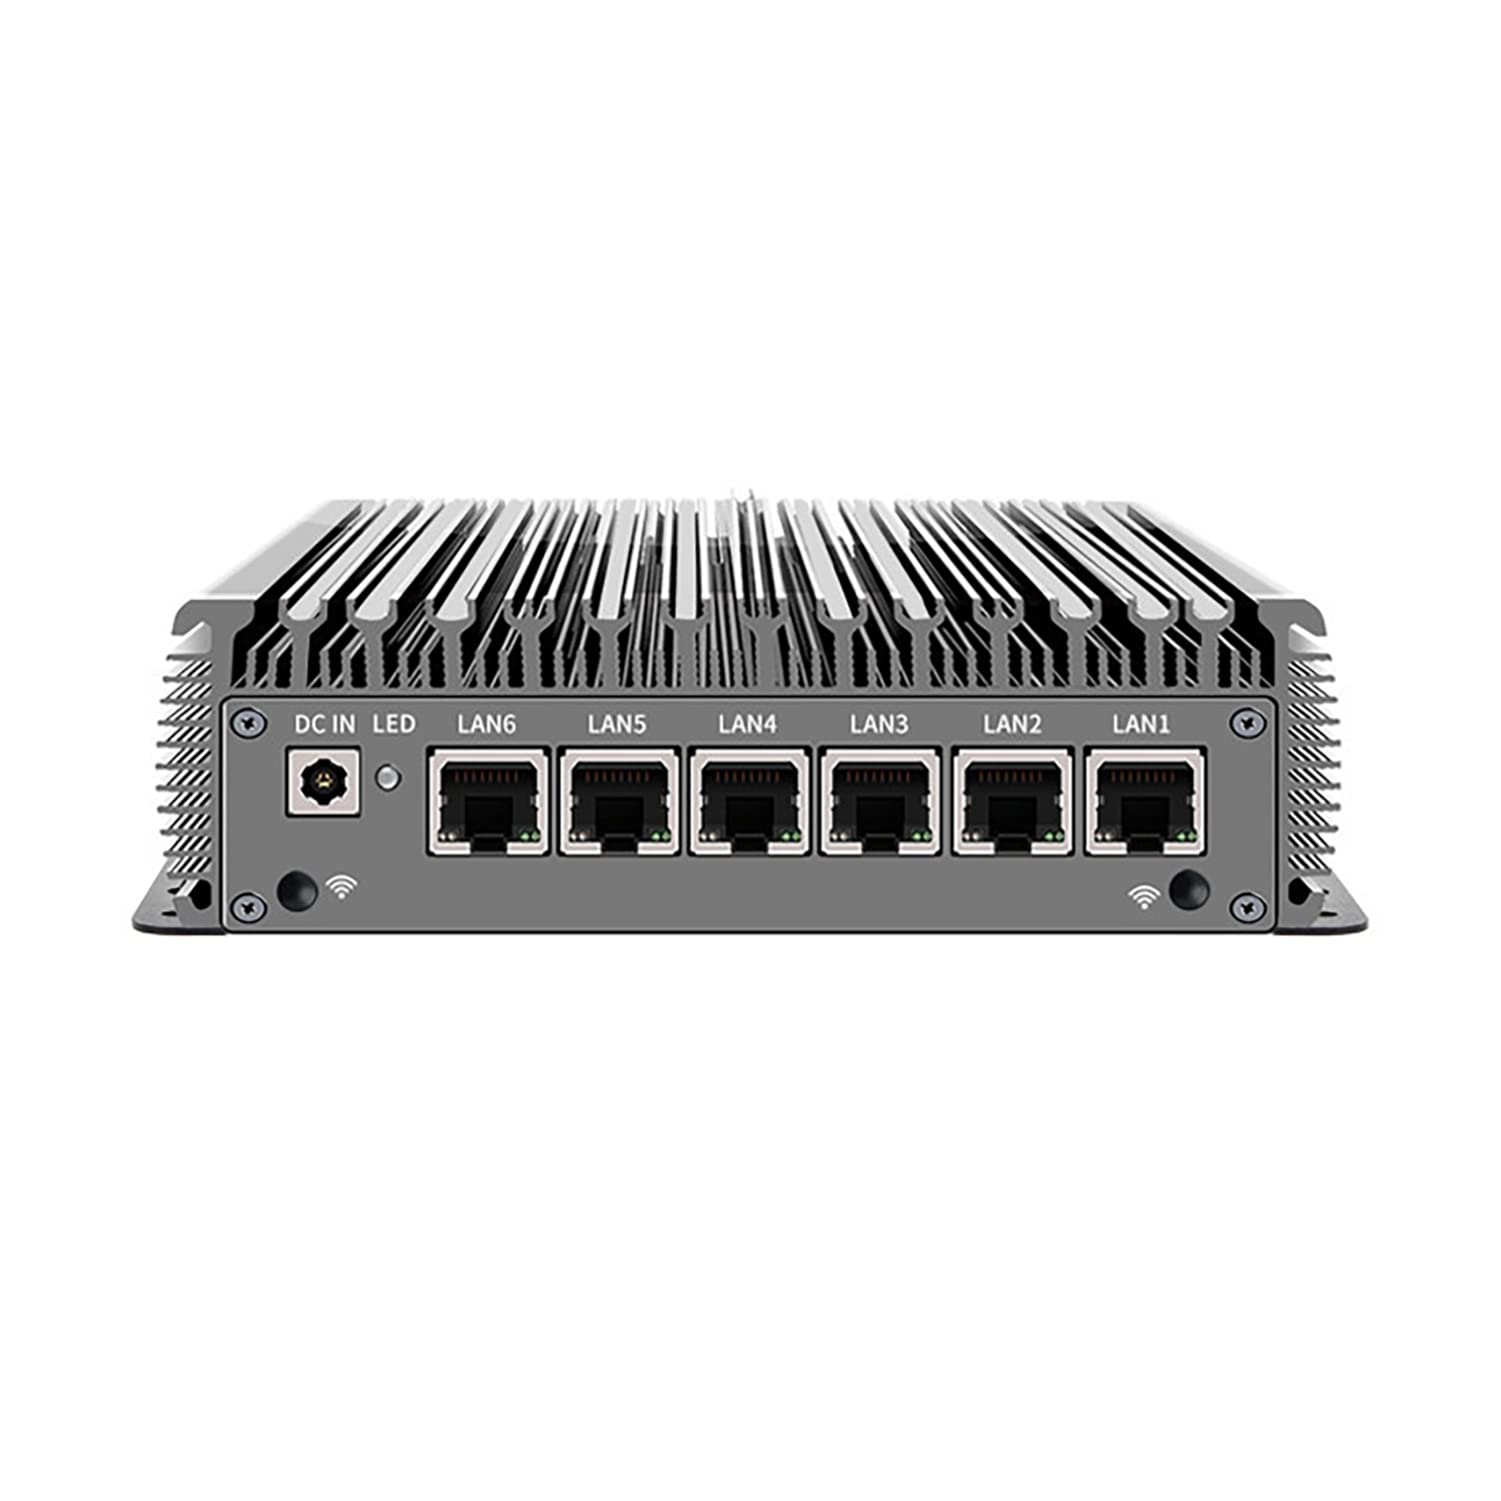 HUNSN Micro Firewall Appliance, Mini PC, OPNsense, VPN, Router PC, Intel Core I3 10110U, RC05, AES-NI, 6 x 2.5GbE I225-LM, 6 x USB, VGA, HDMI, 2 x COM, 4G RAM, 64G SSD